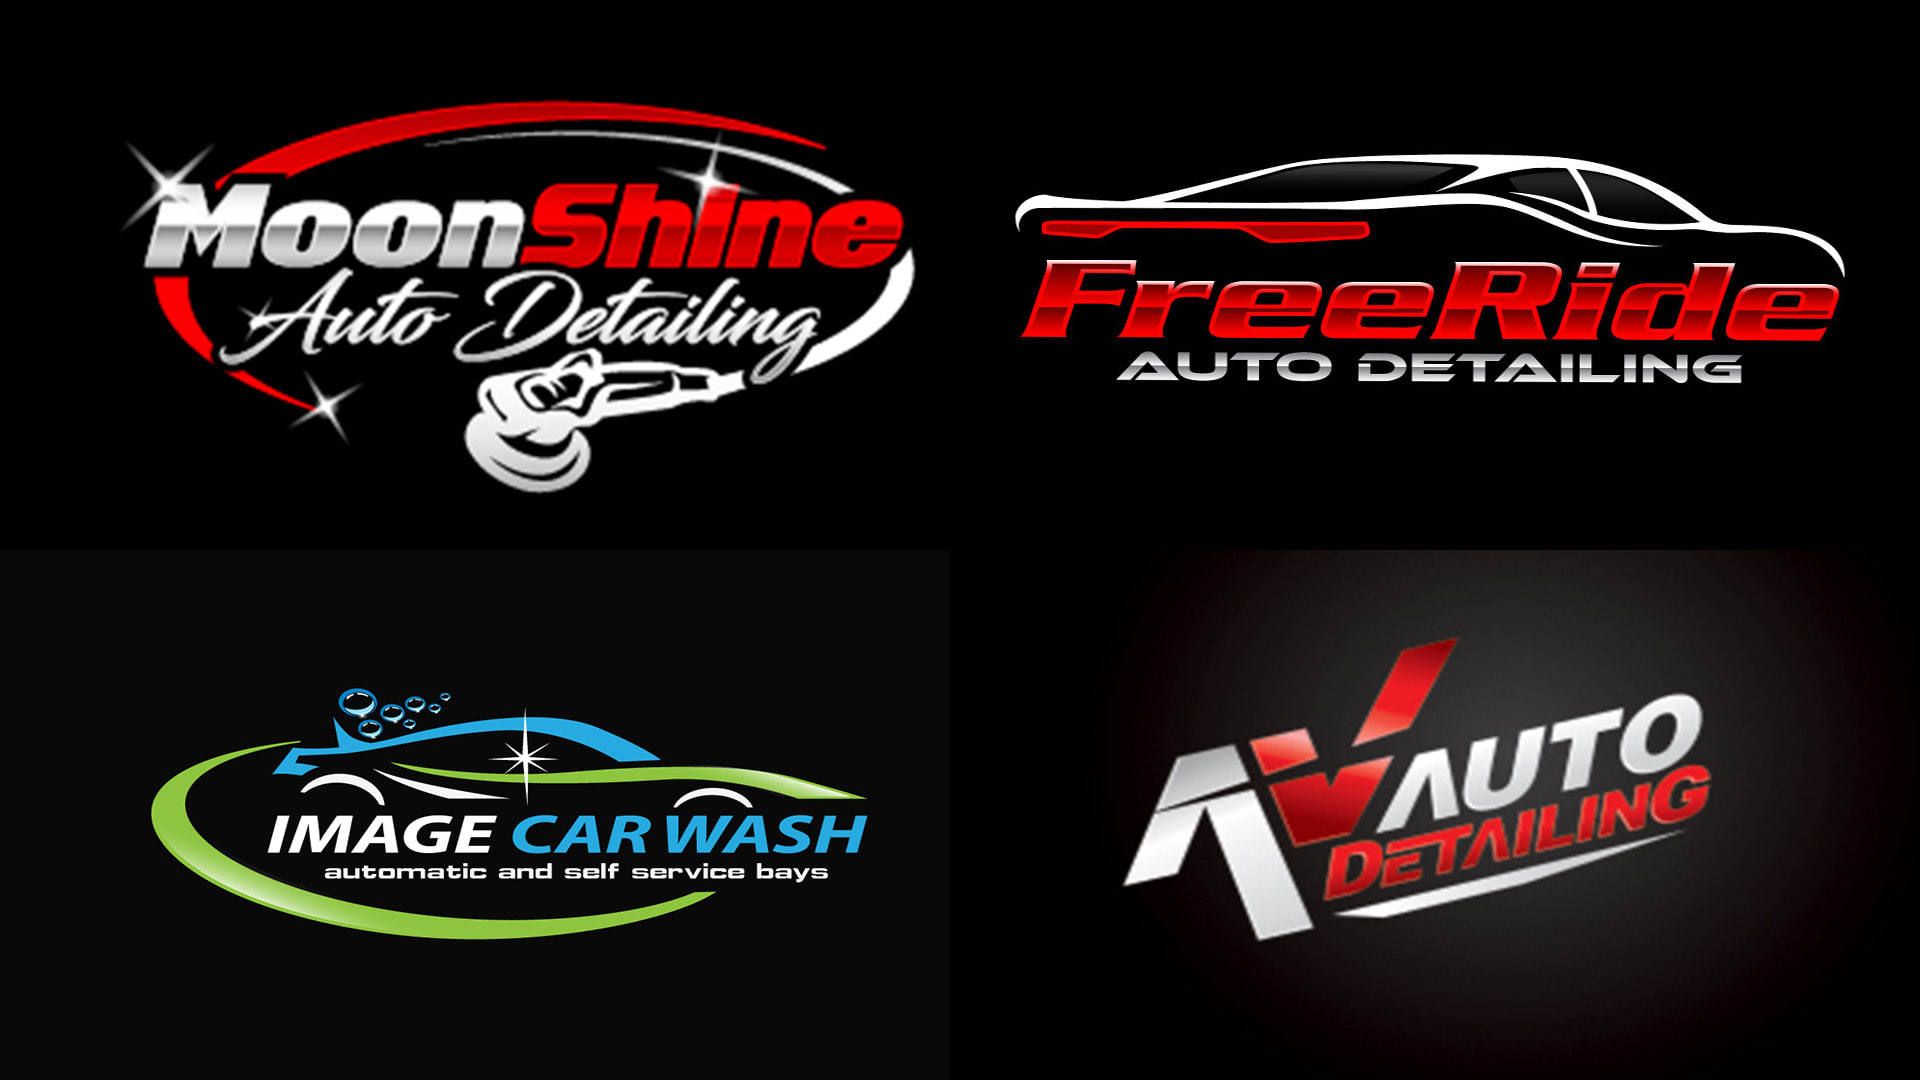 Car Detailing Logos Free 1900 Premium Car Wash Logos Free Car Service